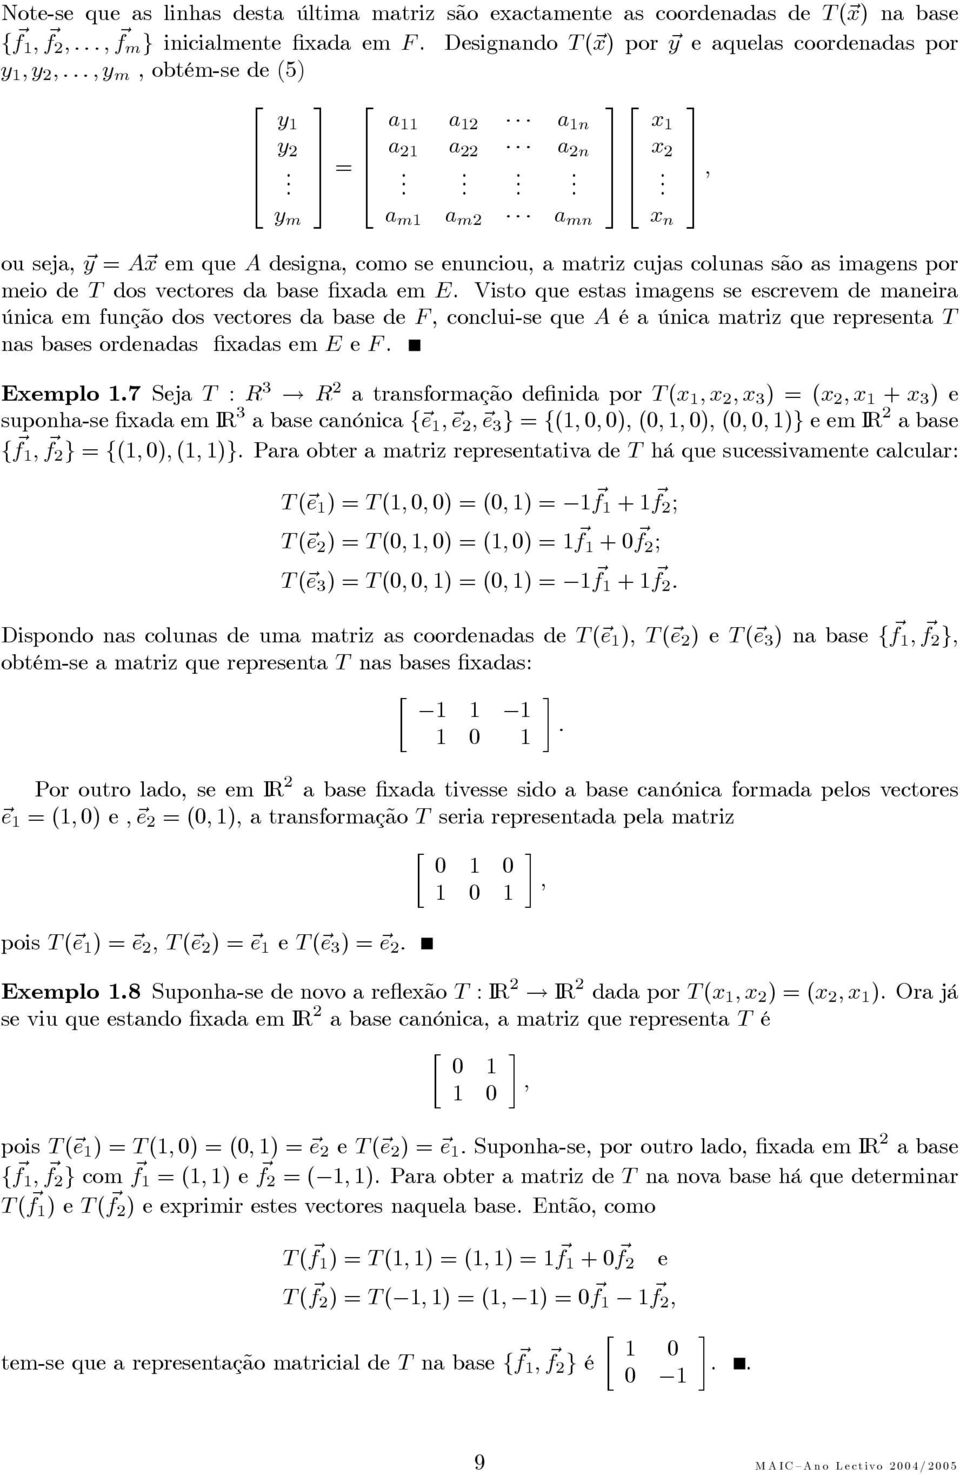 Visto que estas imagens se escrevem de maneira única em função dos vectores da base de F,conclui-sequeA éaúnicamatrizquerepresentat nas bases ordenadas fixadas em E e F Exemplo 7 Seja T : R 3 R 2 a